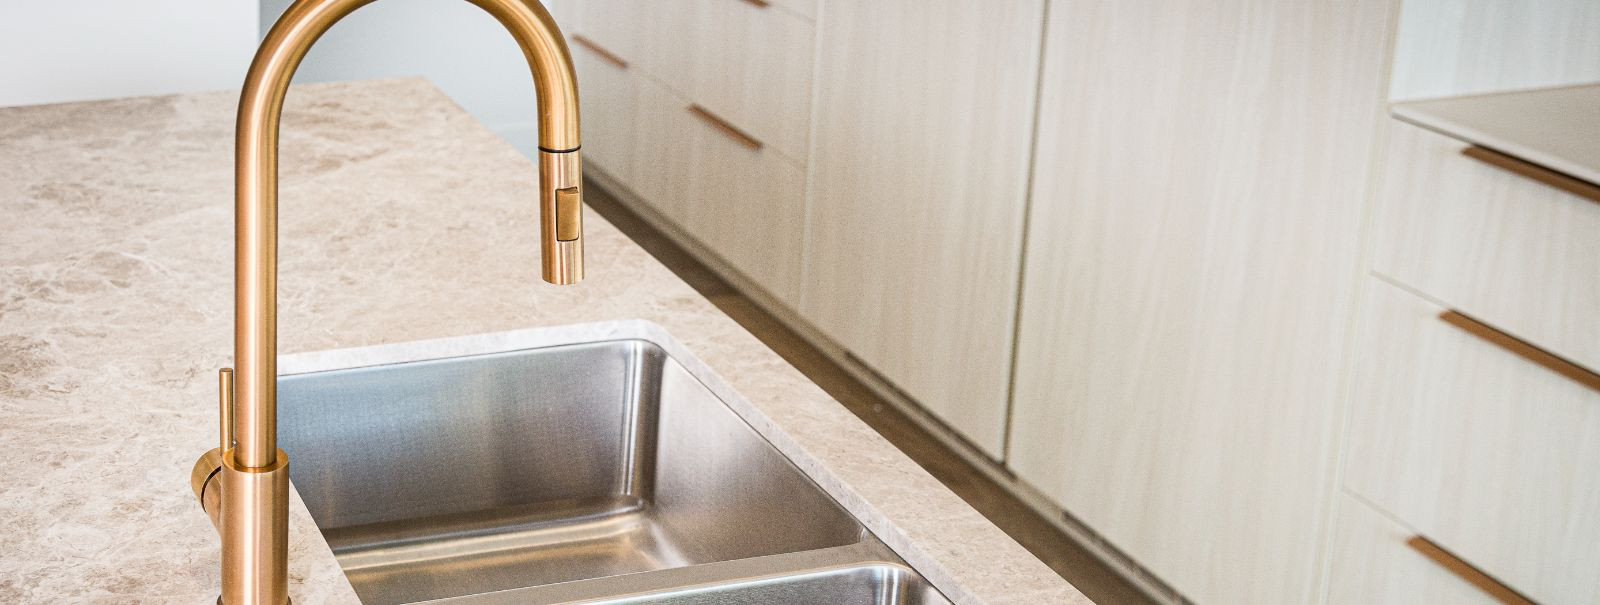 Sanitaartehnika on igas kodus hädavajalik komponent, mis aitab kaasa teie vannitoa ja köögi üldisele mugavusele, hügieenile ja esteetilisele veetlusele. Kvalite